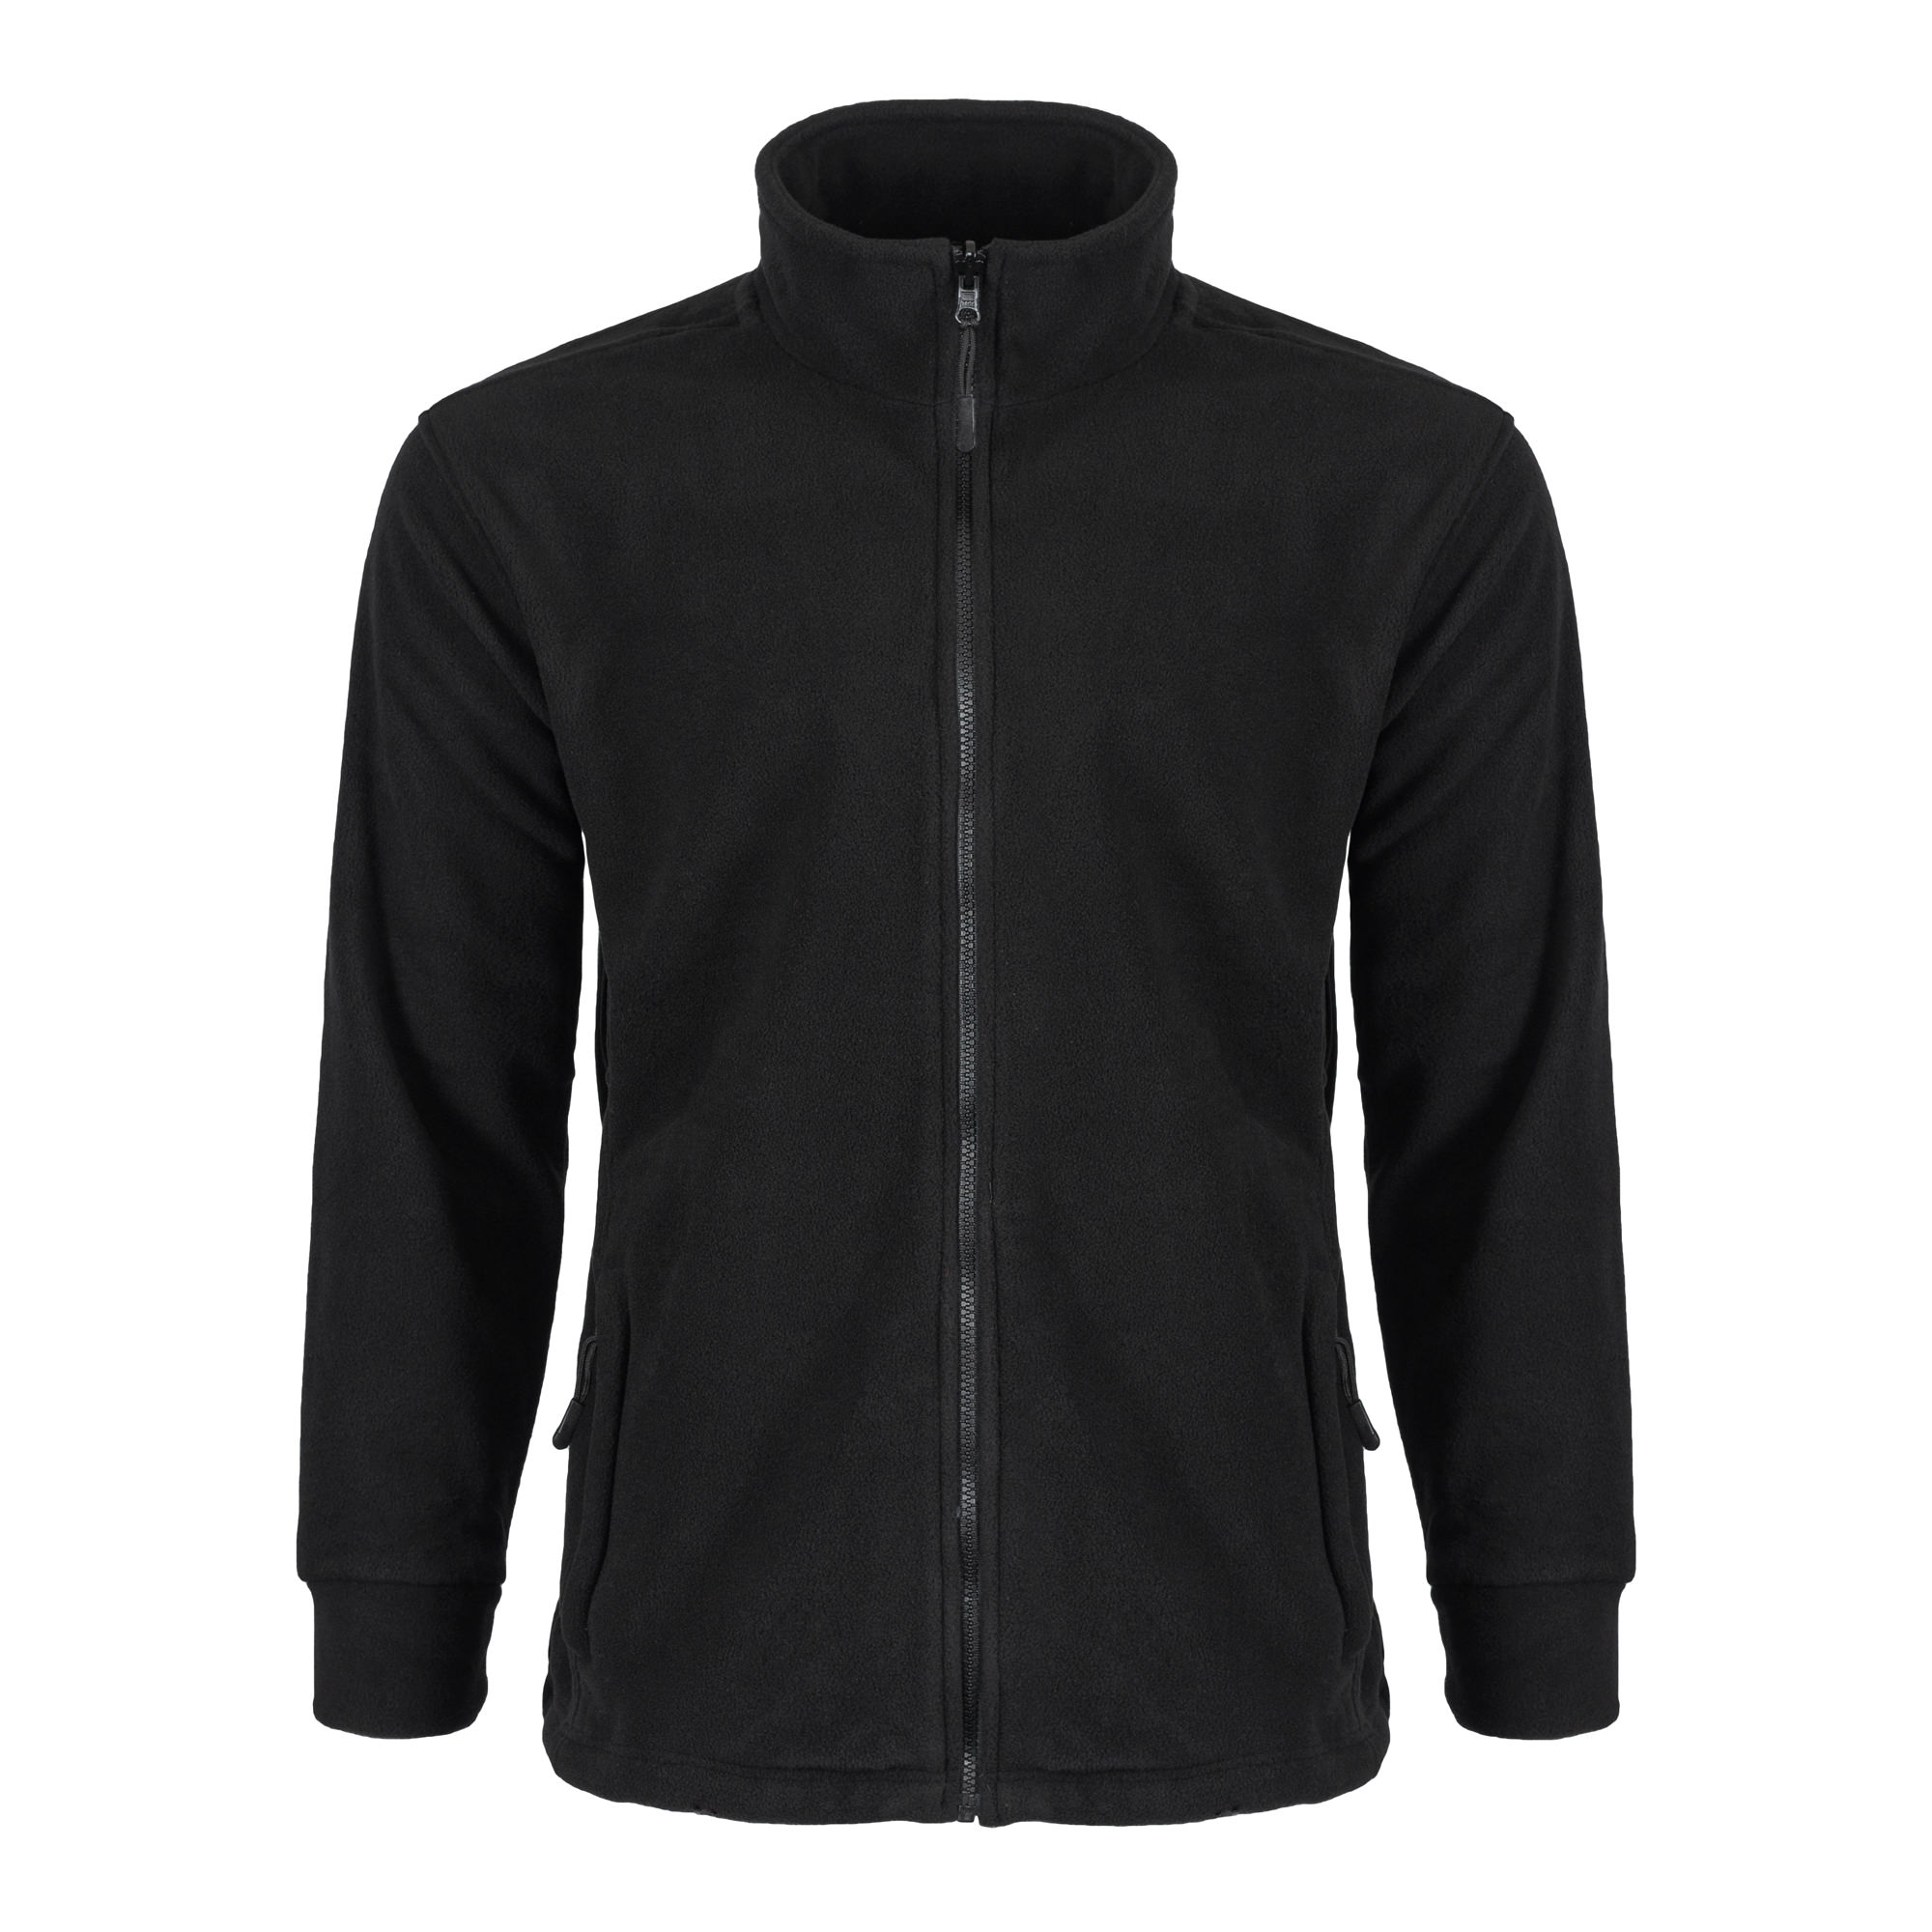 Bertee Interactive Fleece Jacket - Protective Wear Supplies